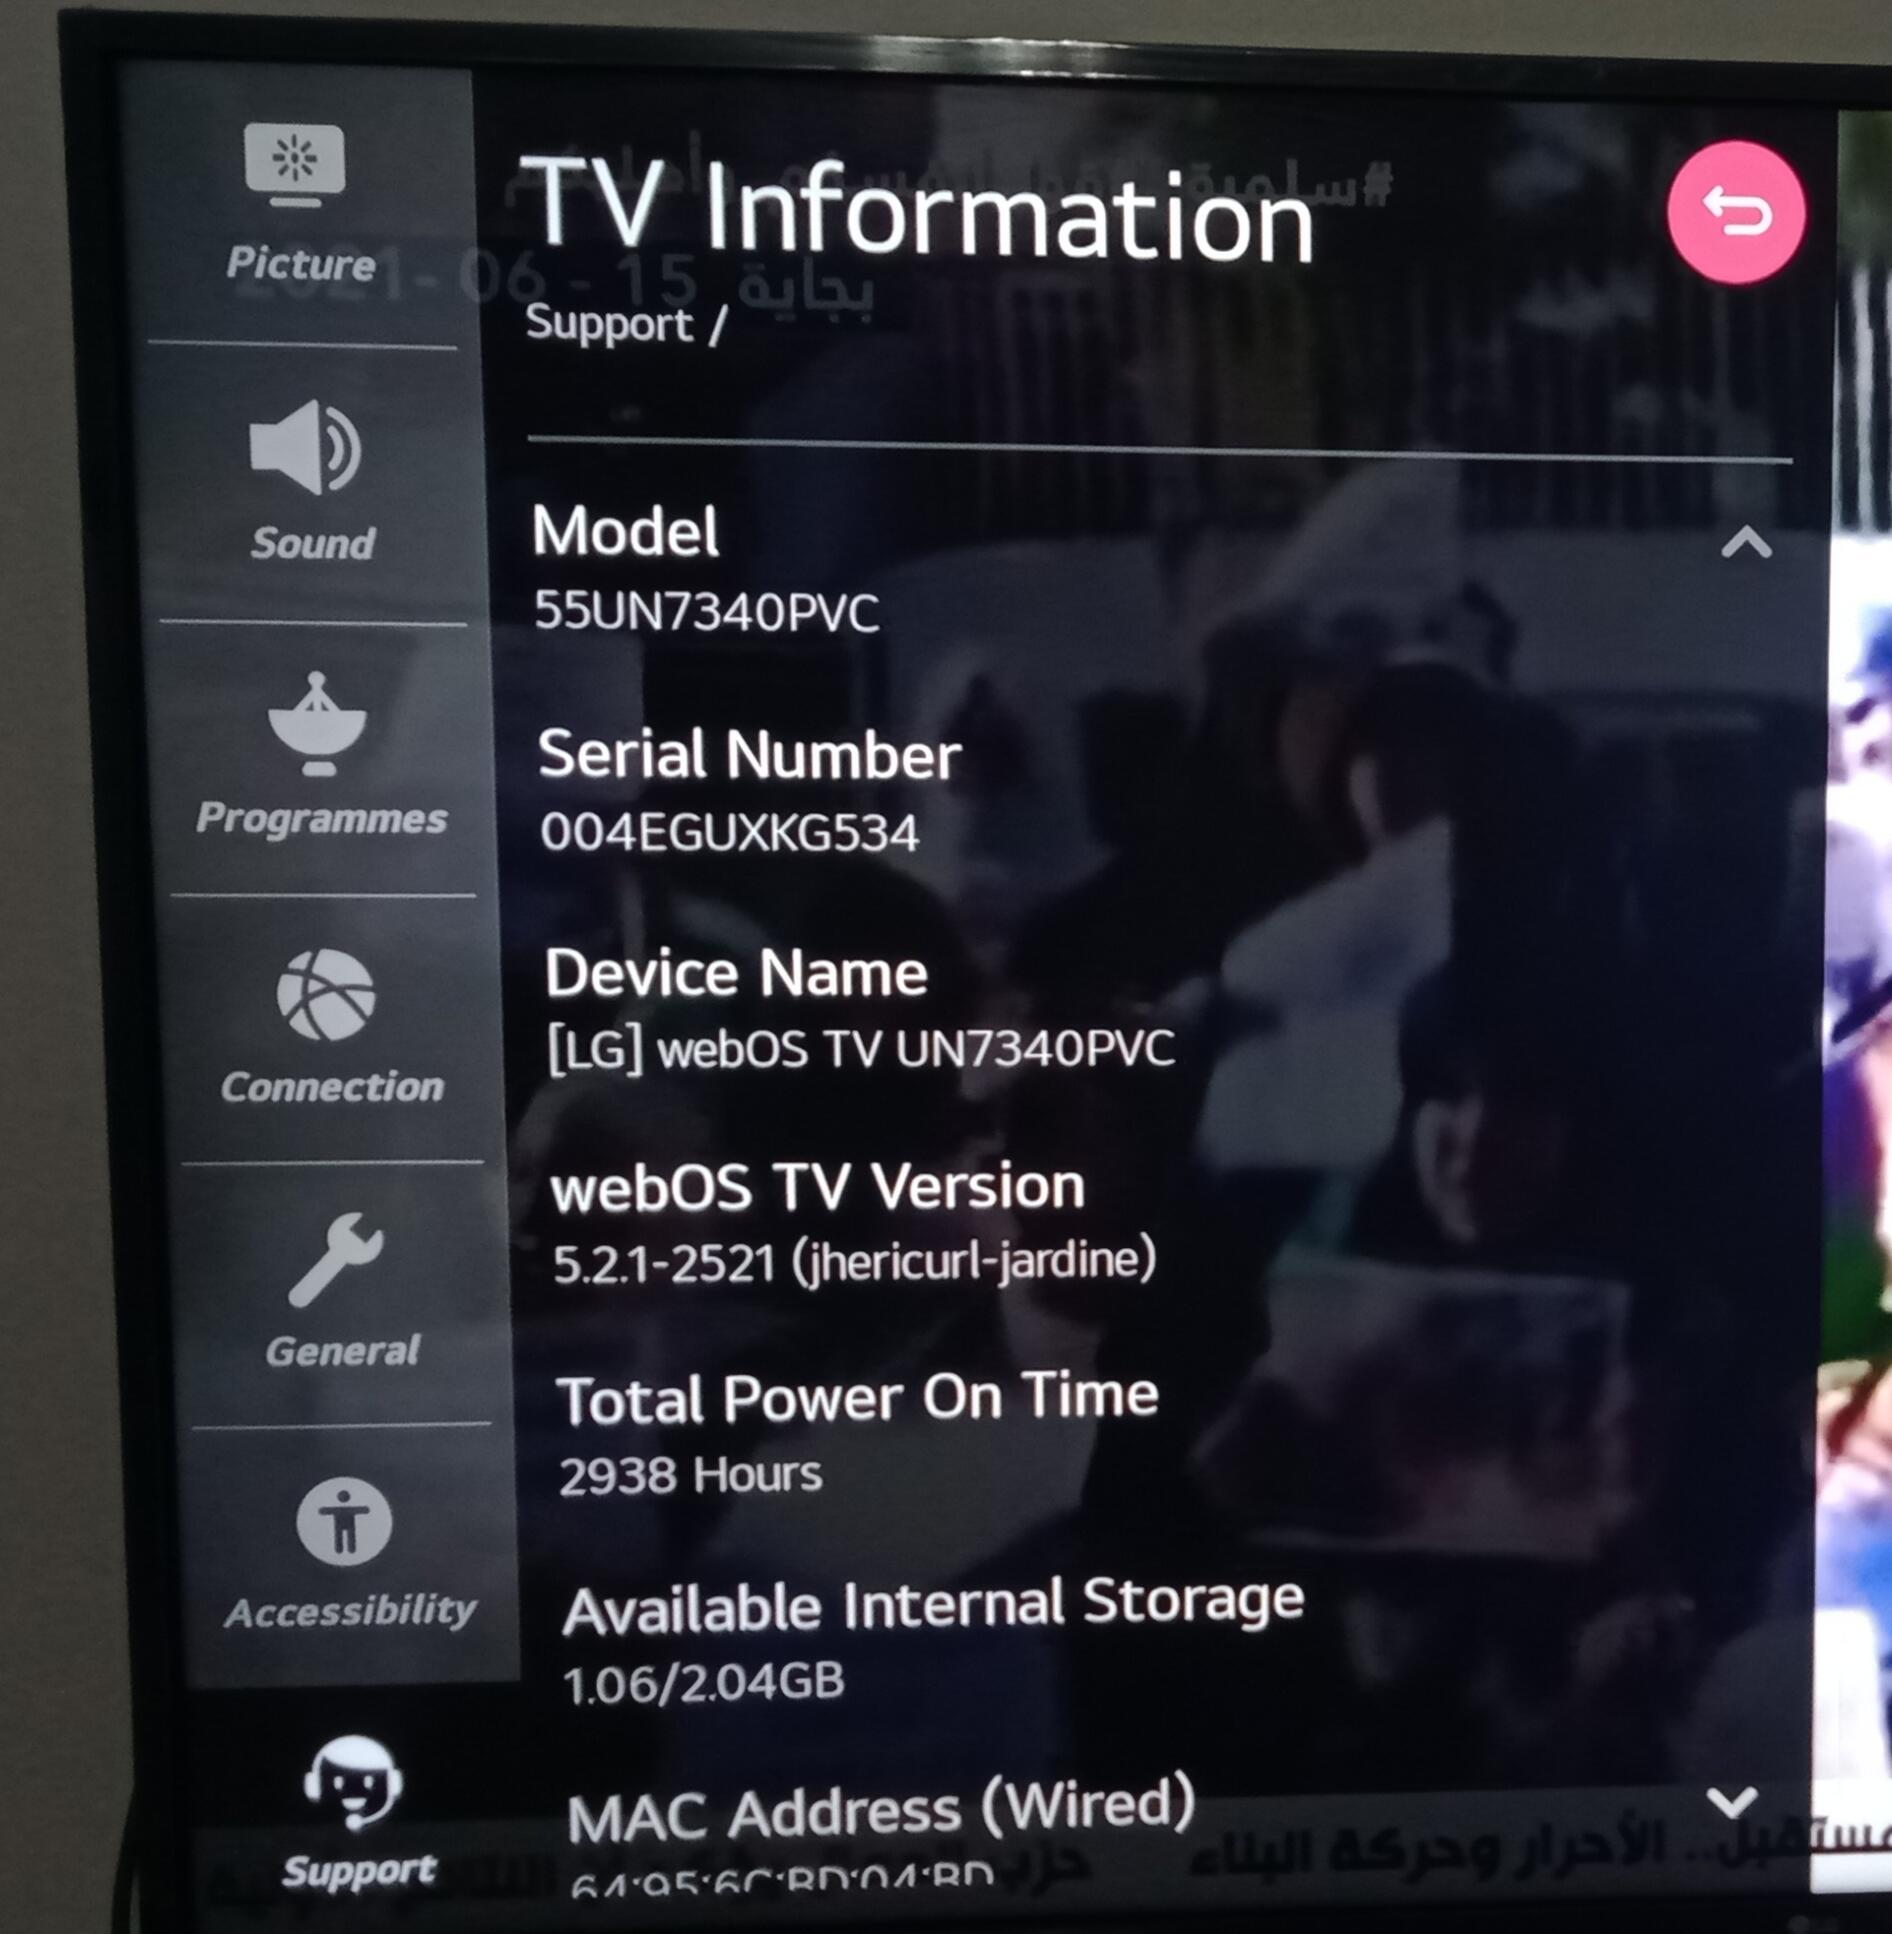 احدث ملف قنوات انجليزى لشاشة 4K LG webOS TV SM8100PVA والشاشات الحديثة تاريخ اليوم 7-10-2021 P_19933cwgw1